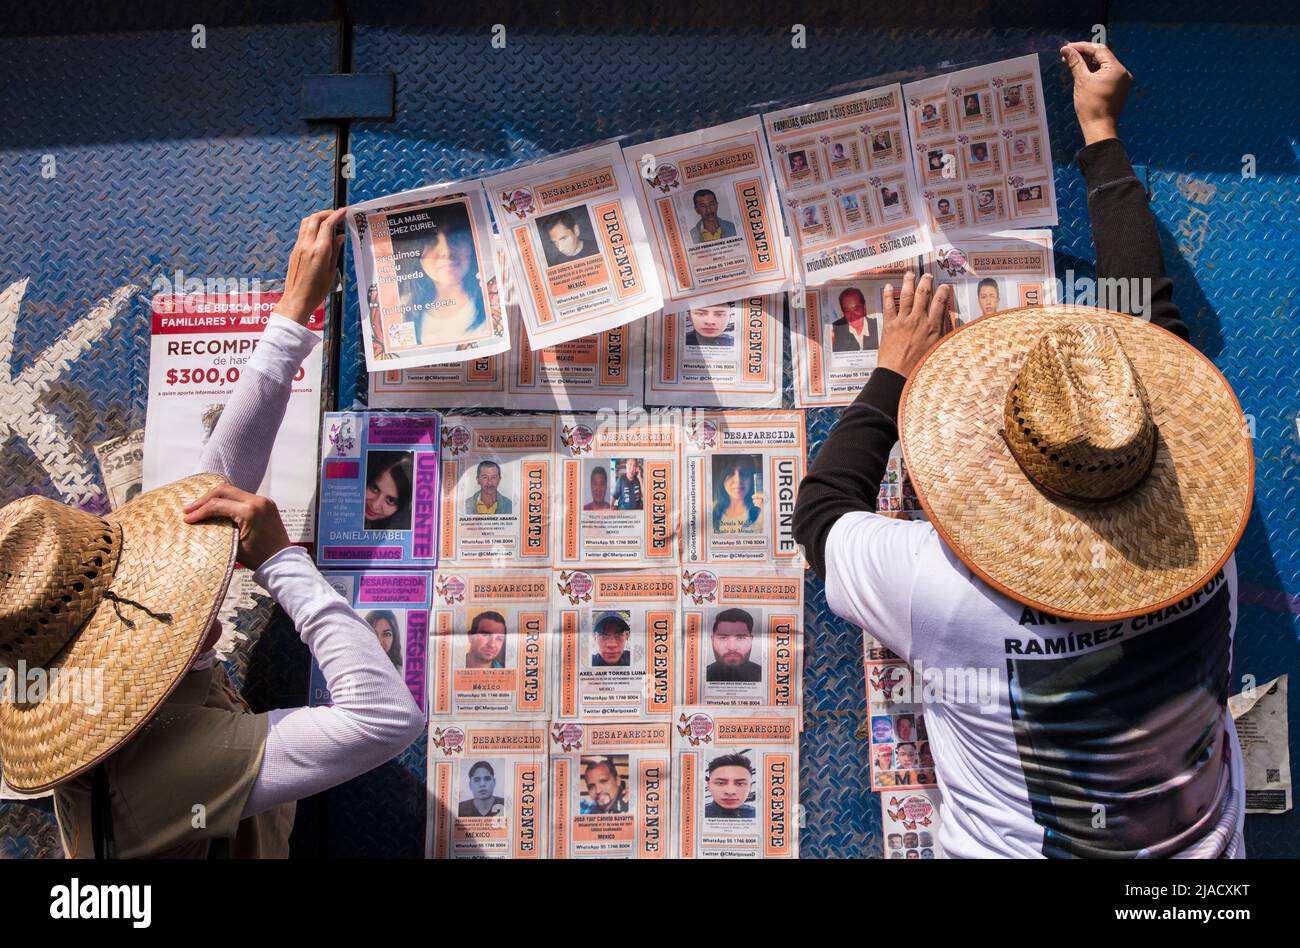 Los familiares publican imágenes de personas desaparecidas en un muro conmemorativo improvisado dedicado a personas desaparecidas en la Ciudad de México, México Foto de stock